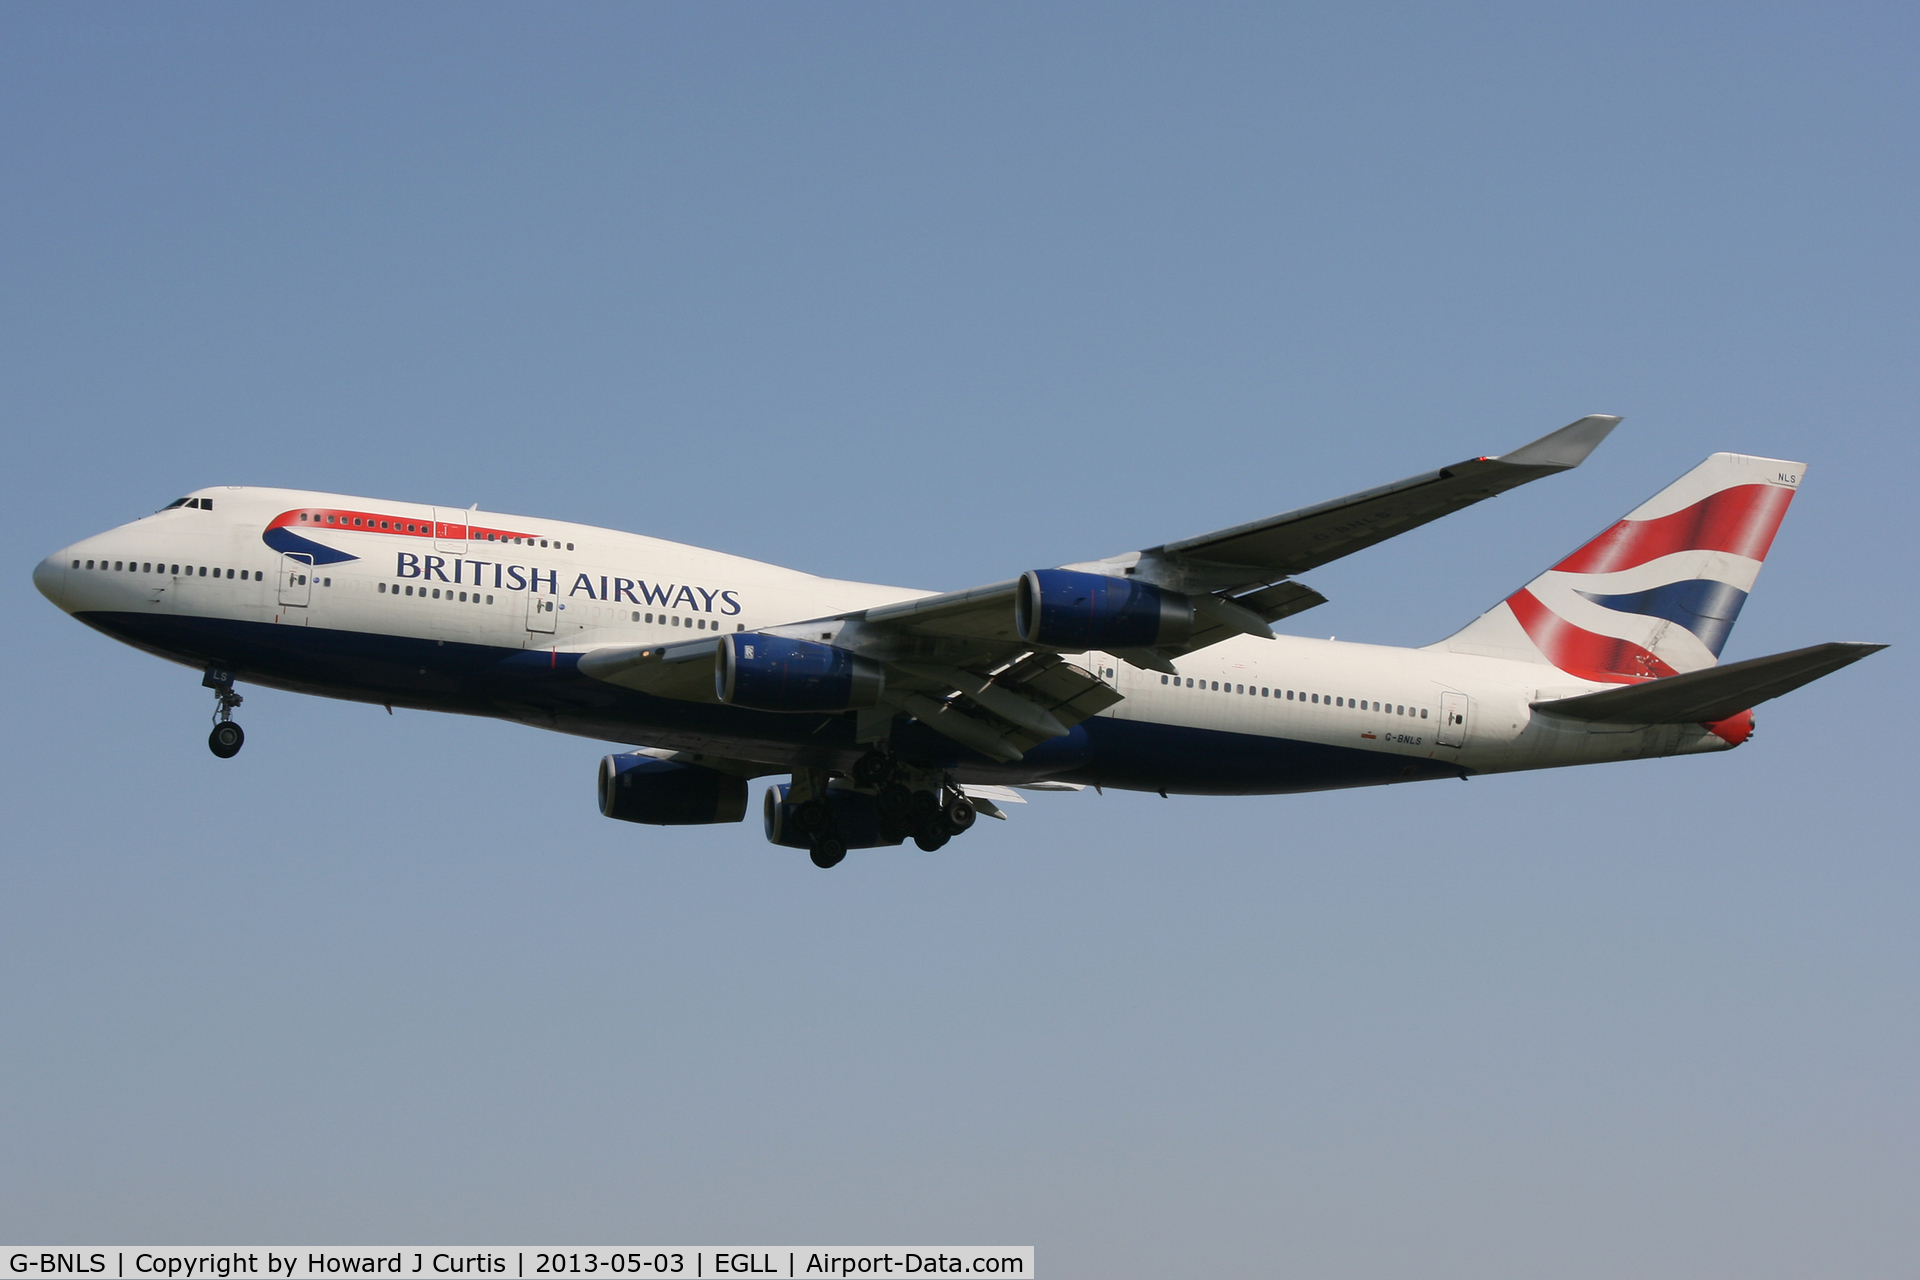 G-BNLS, 1991 Boeing 747-436 C/N 24629, British Airways, on approach to runway 27L.